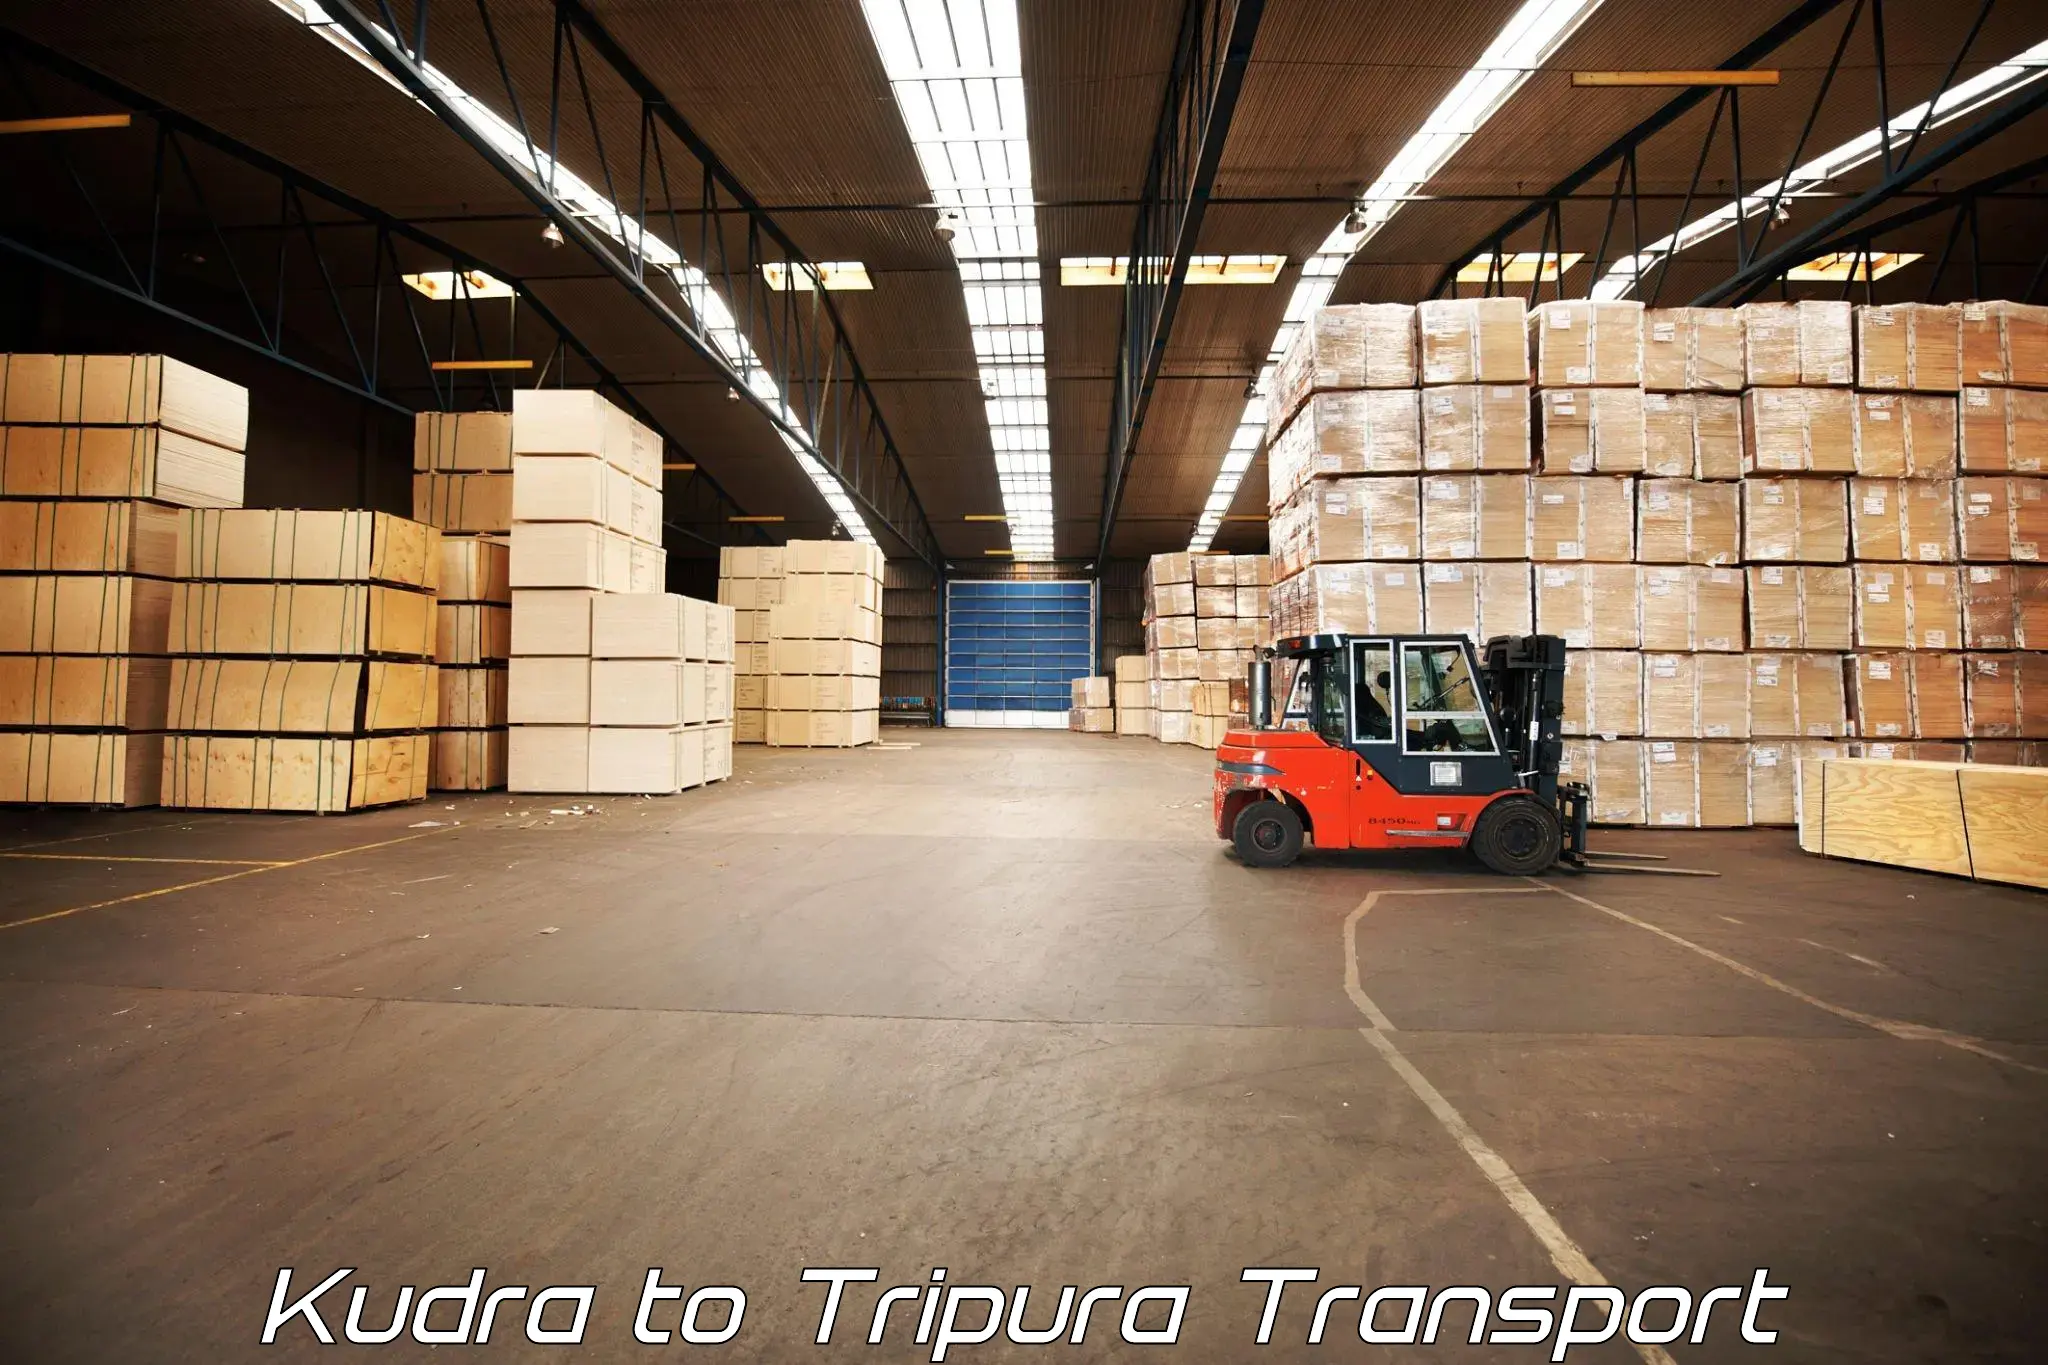 Transport in sharing Kudra to Udaipur Tripura